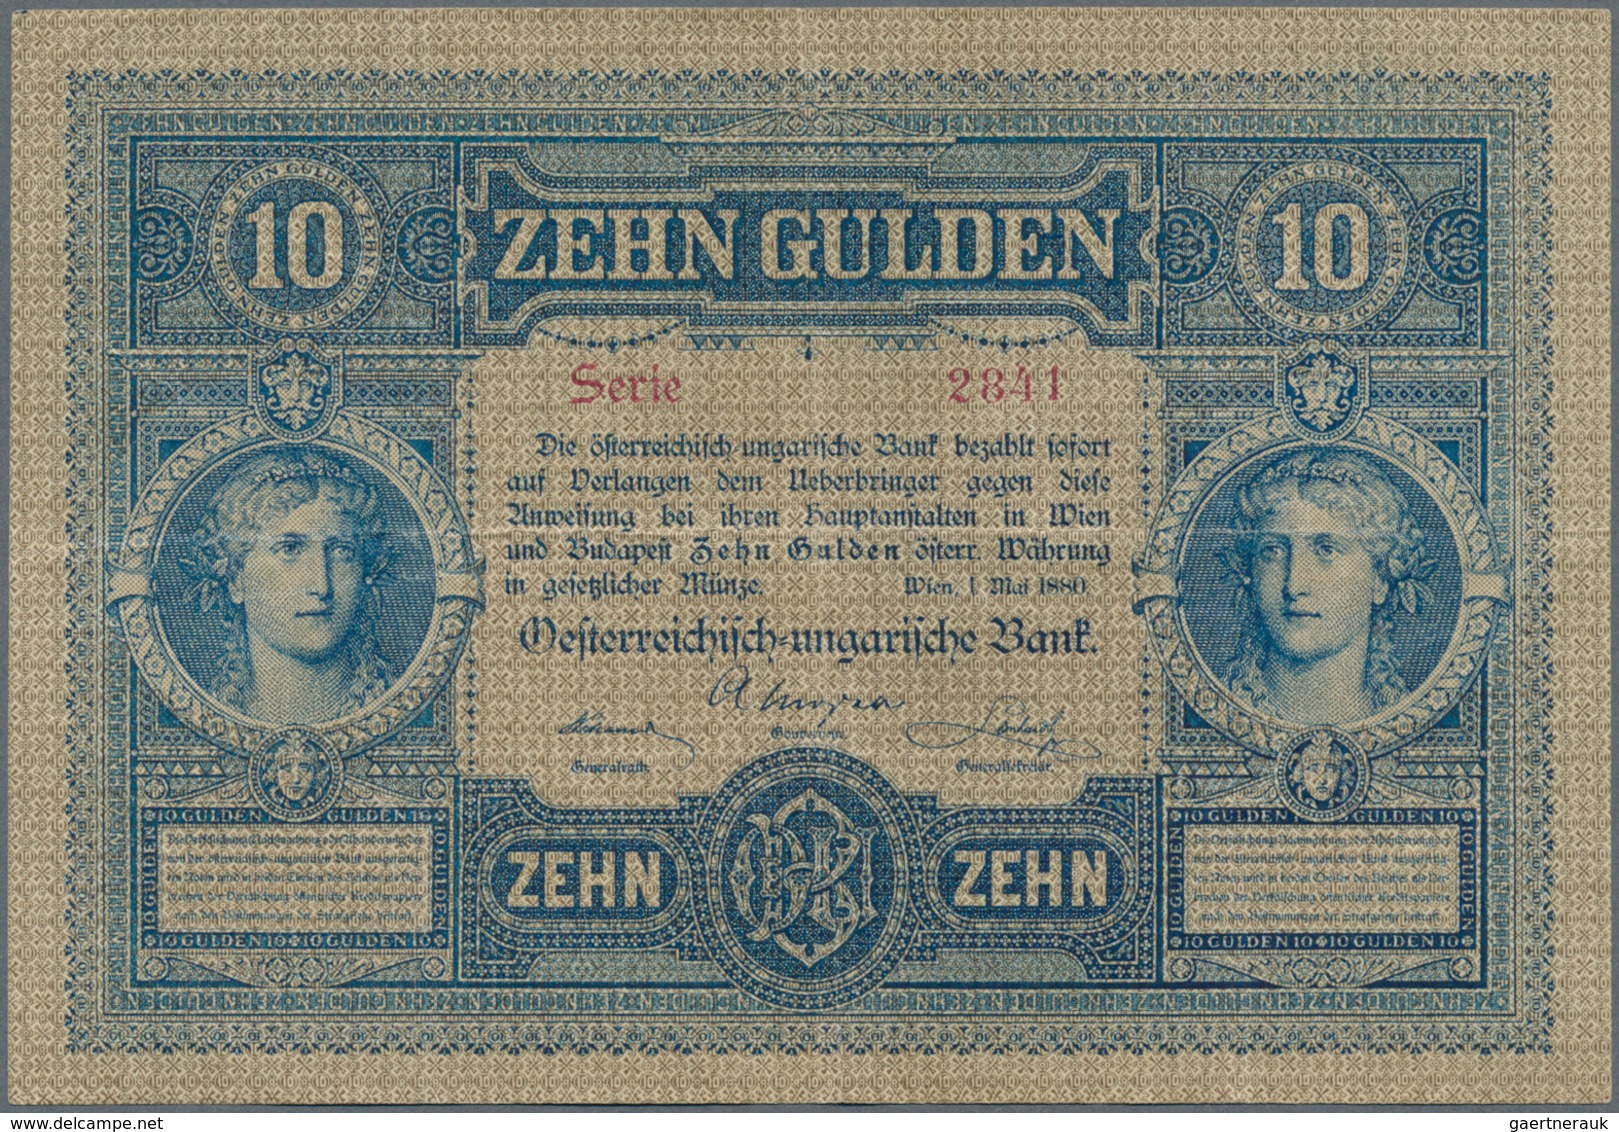 Austria / Österreich: 10 Gulden 1880 P. 1, S/N 023887, Rare Note In Nice Condition With Some Vertica - Austria